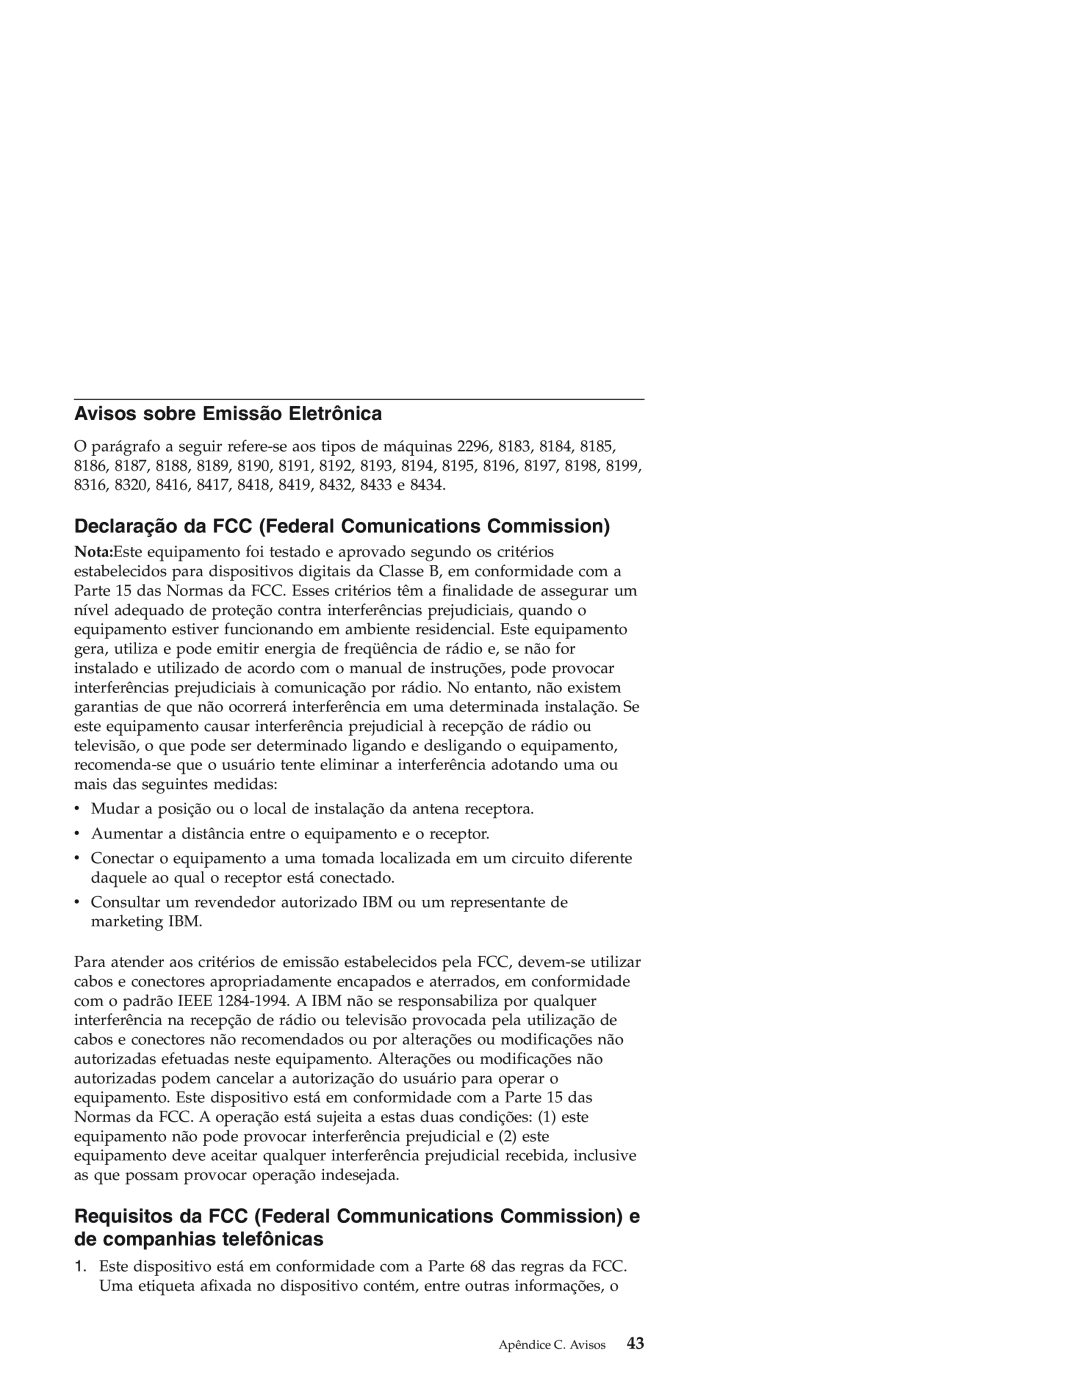 IBM Personal Computer manual Avisos sobre Emissão Eletrônica, Declaração da FCC Federal Comunications Commission 